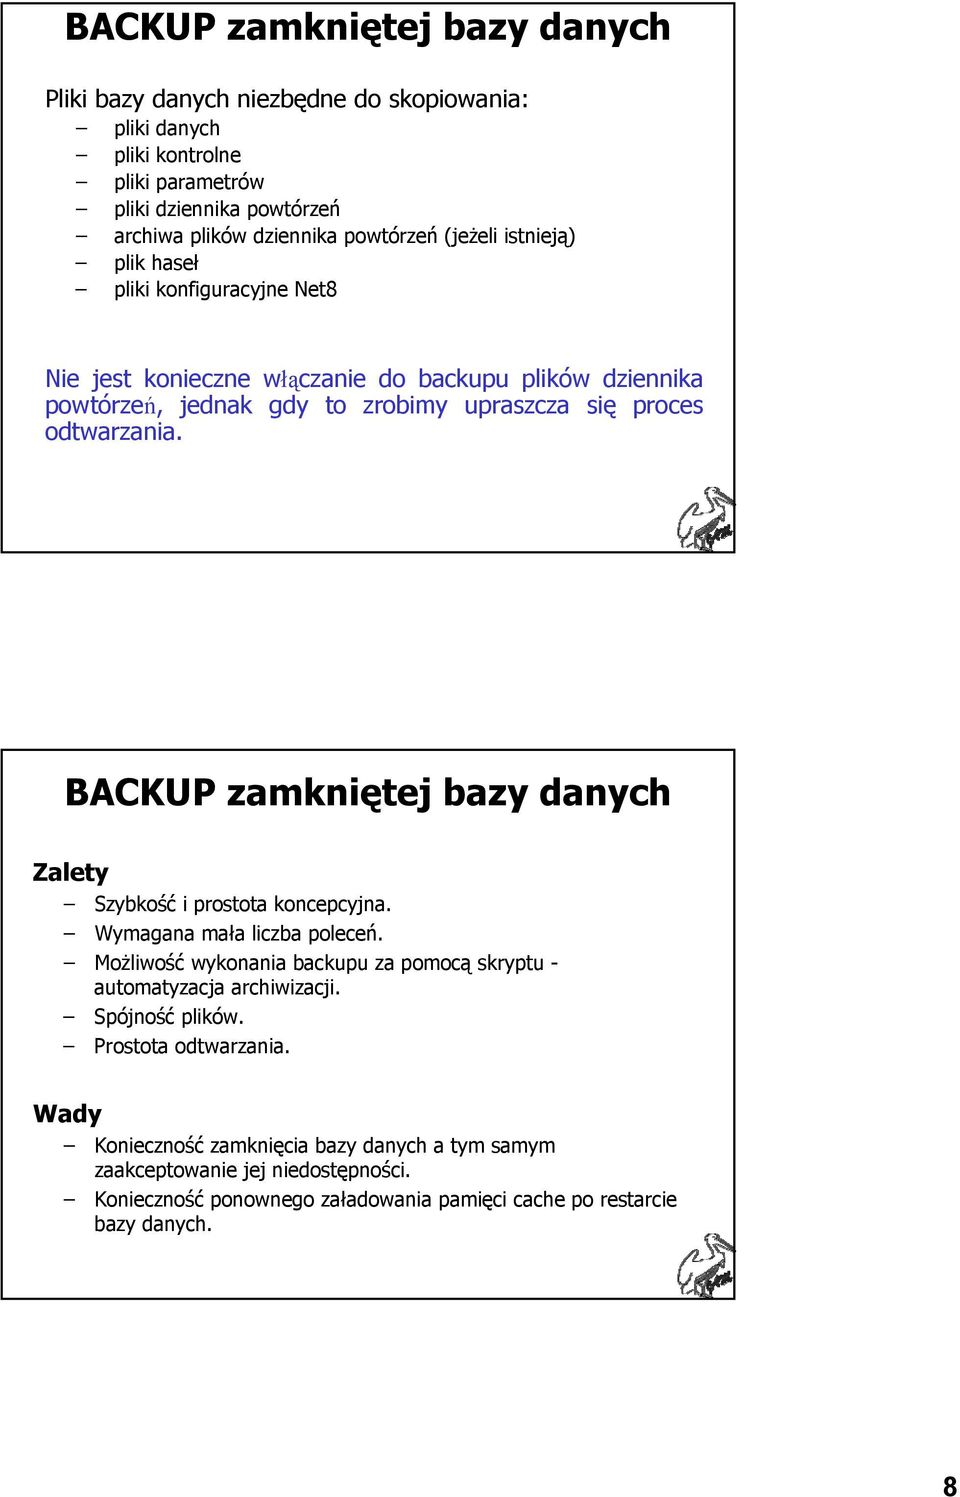 BACKUP zamkniętej bazy danych Zalety Szybkość i prostota koncepcyjna. Wymagana mała liczba poleceń. Możliwość wykonania backupu za pomocą skryptu - automatyzacja archiwizacji.